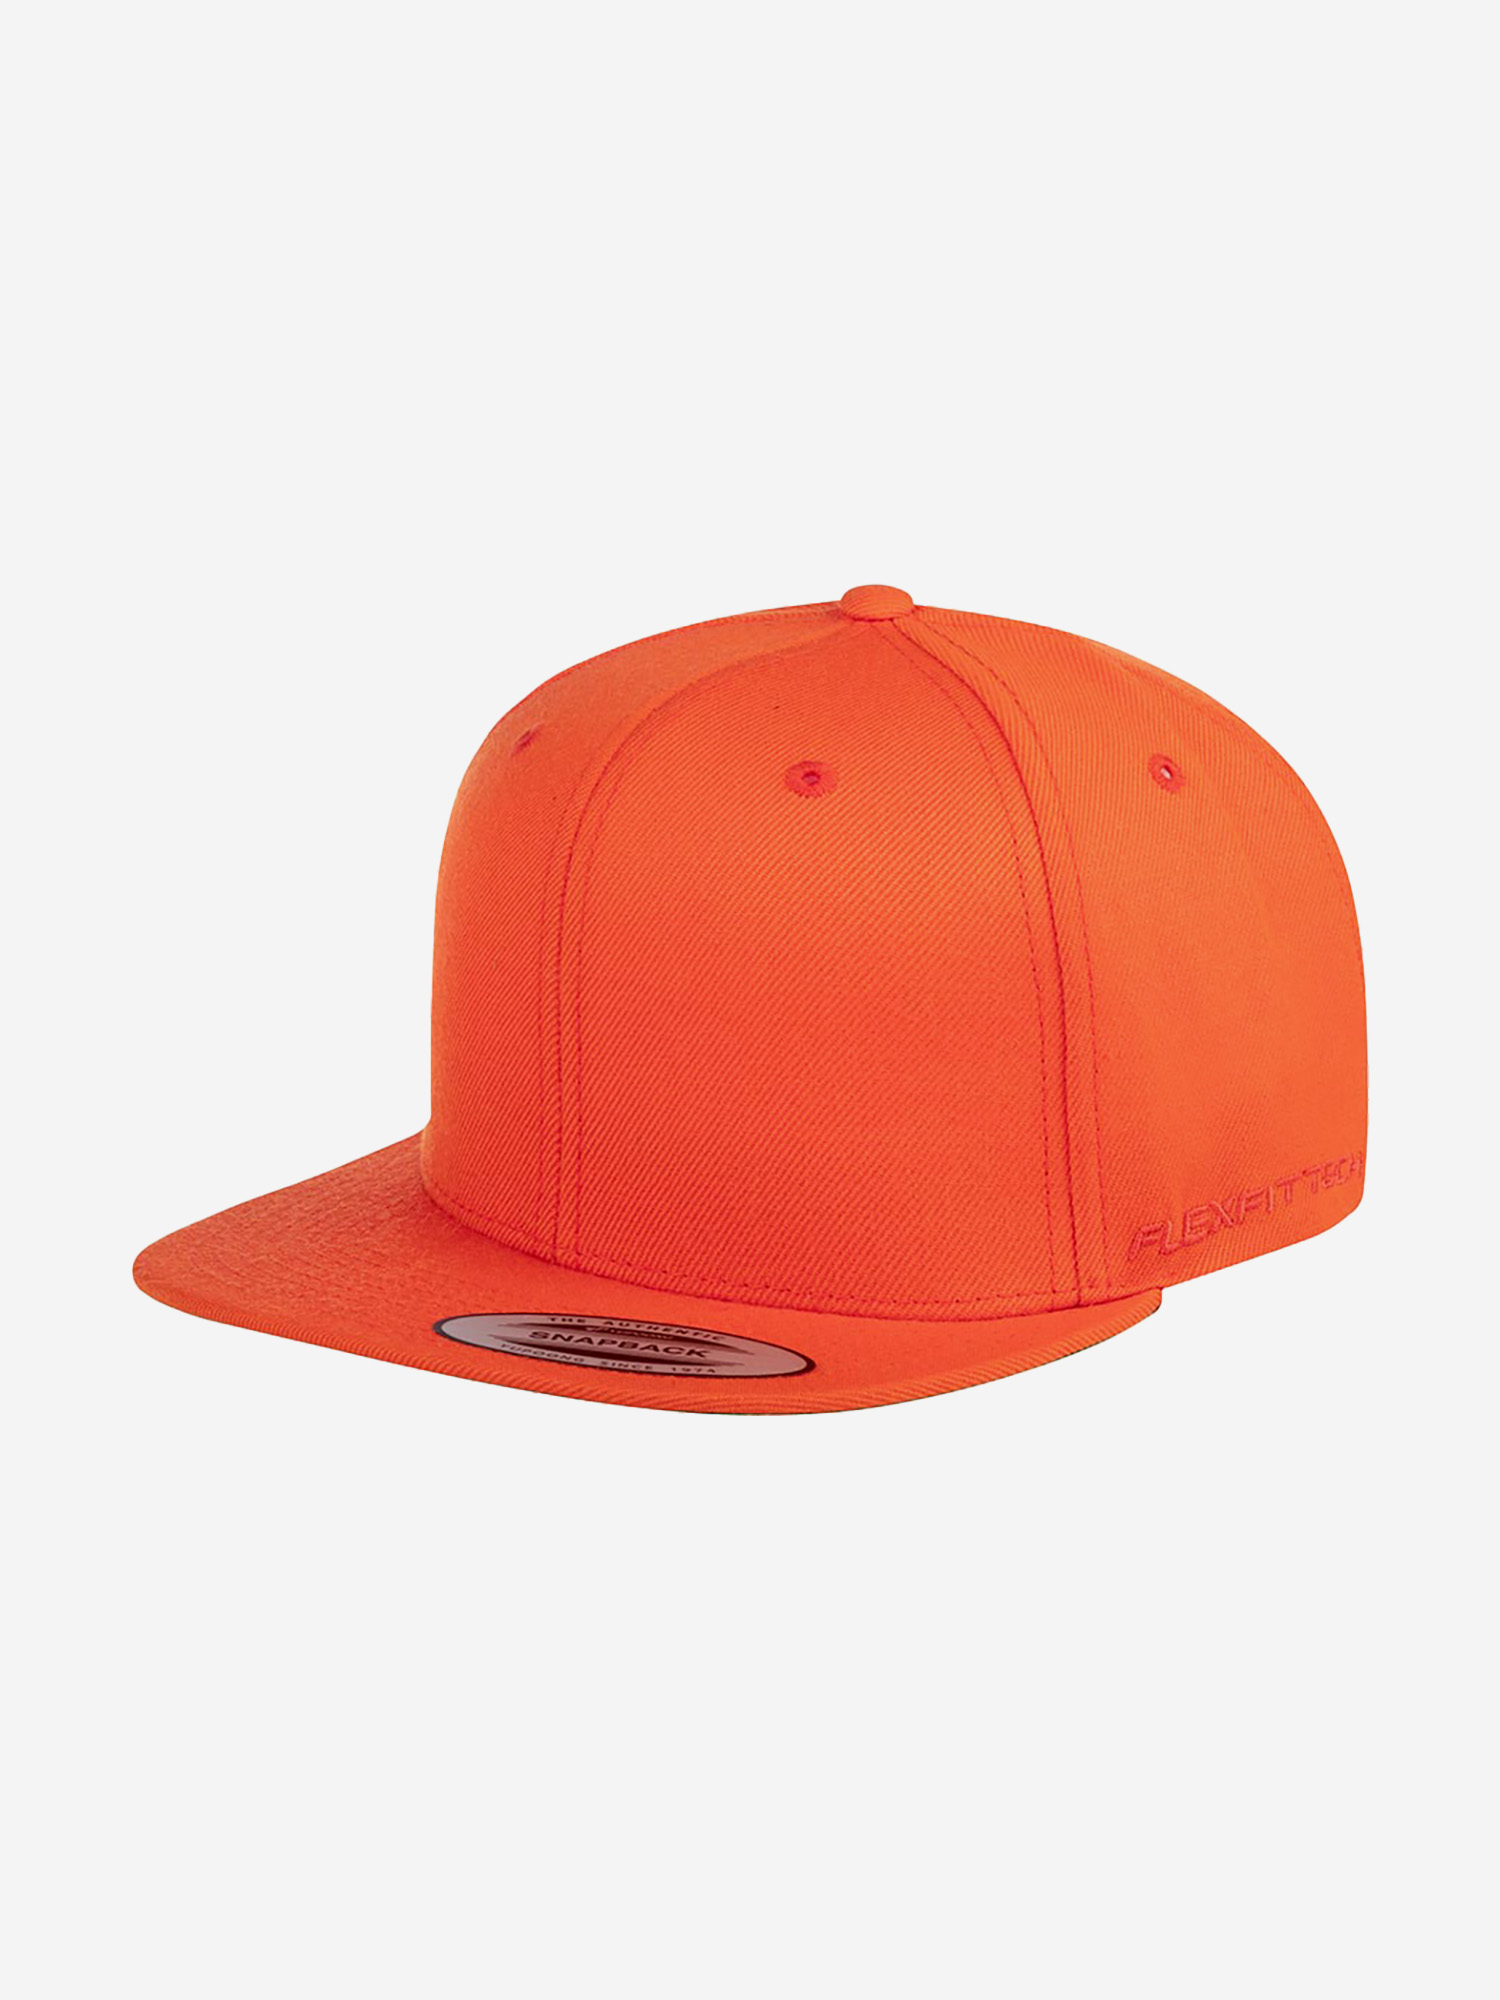 Бейсболка с прямым козырьком FLEXFIT 6089M (оранжевый), Оранжевый